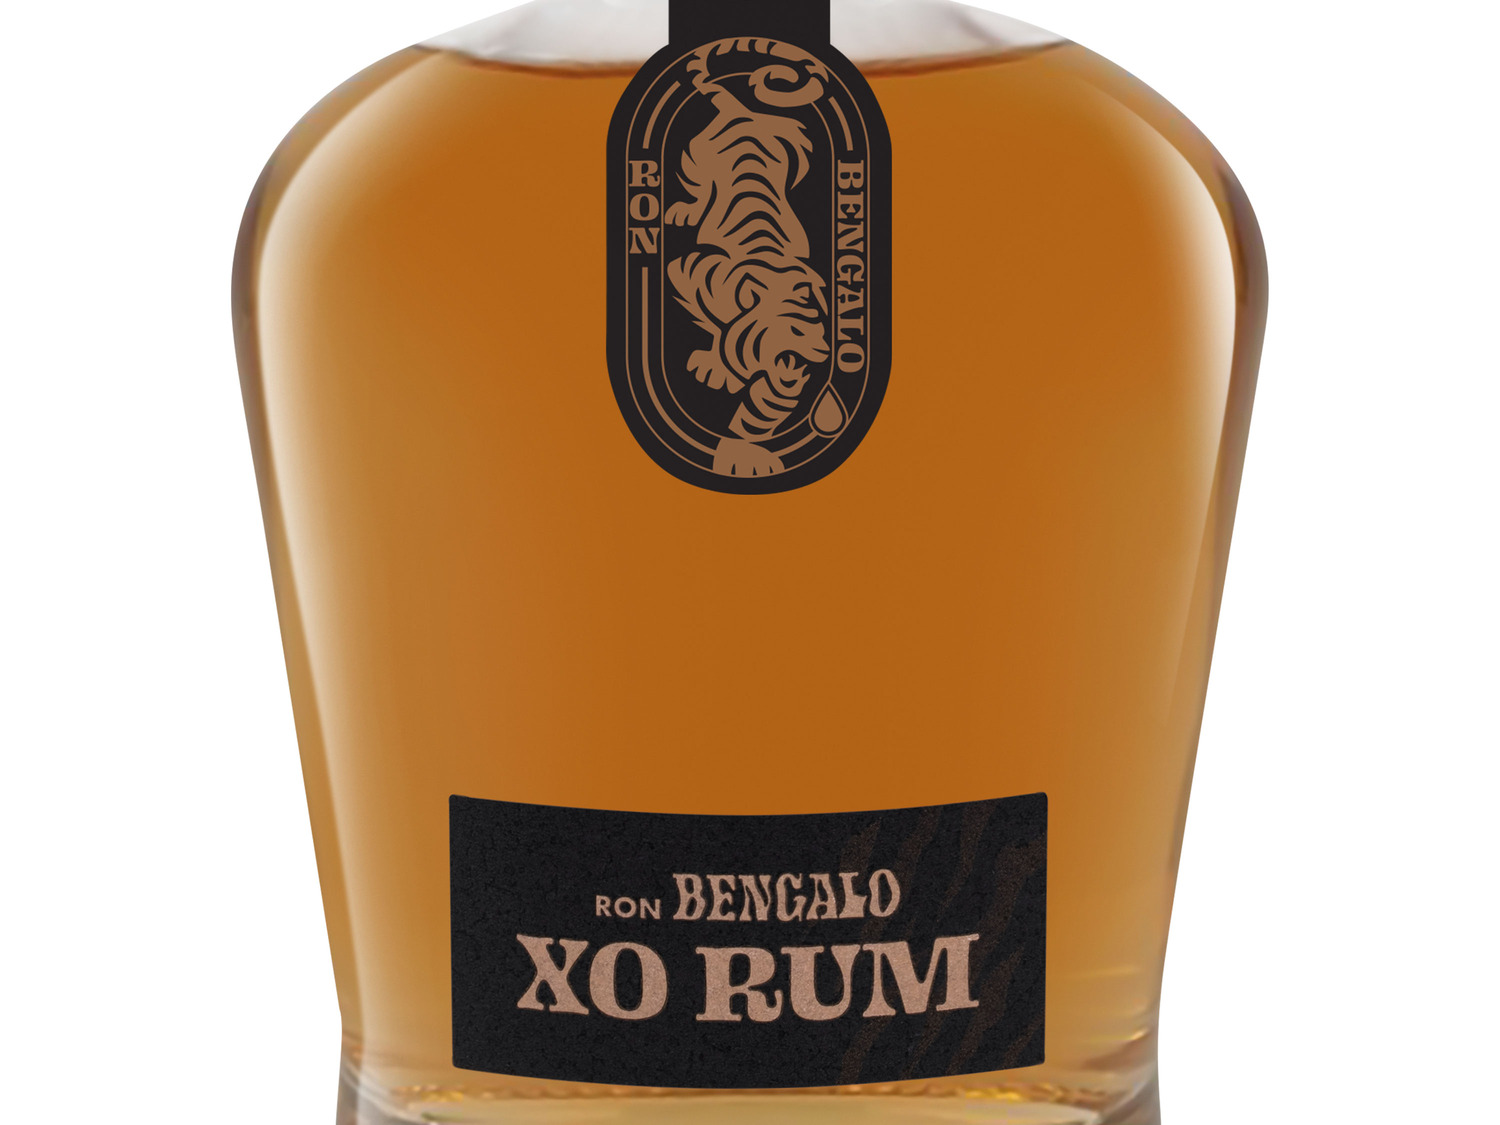 Ron Bengalo XO Rum 43 % Vol online kaufen | LIDL